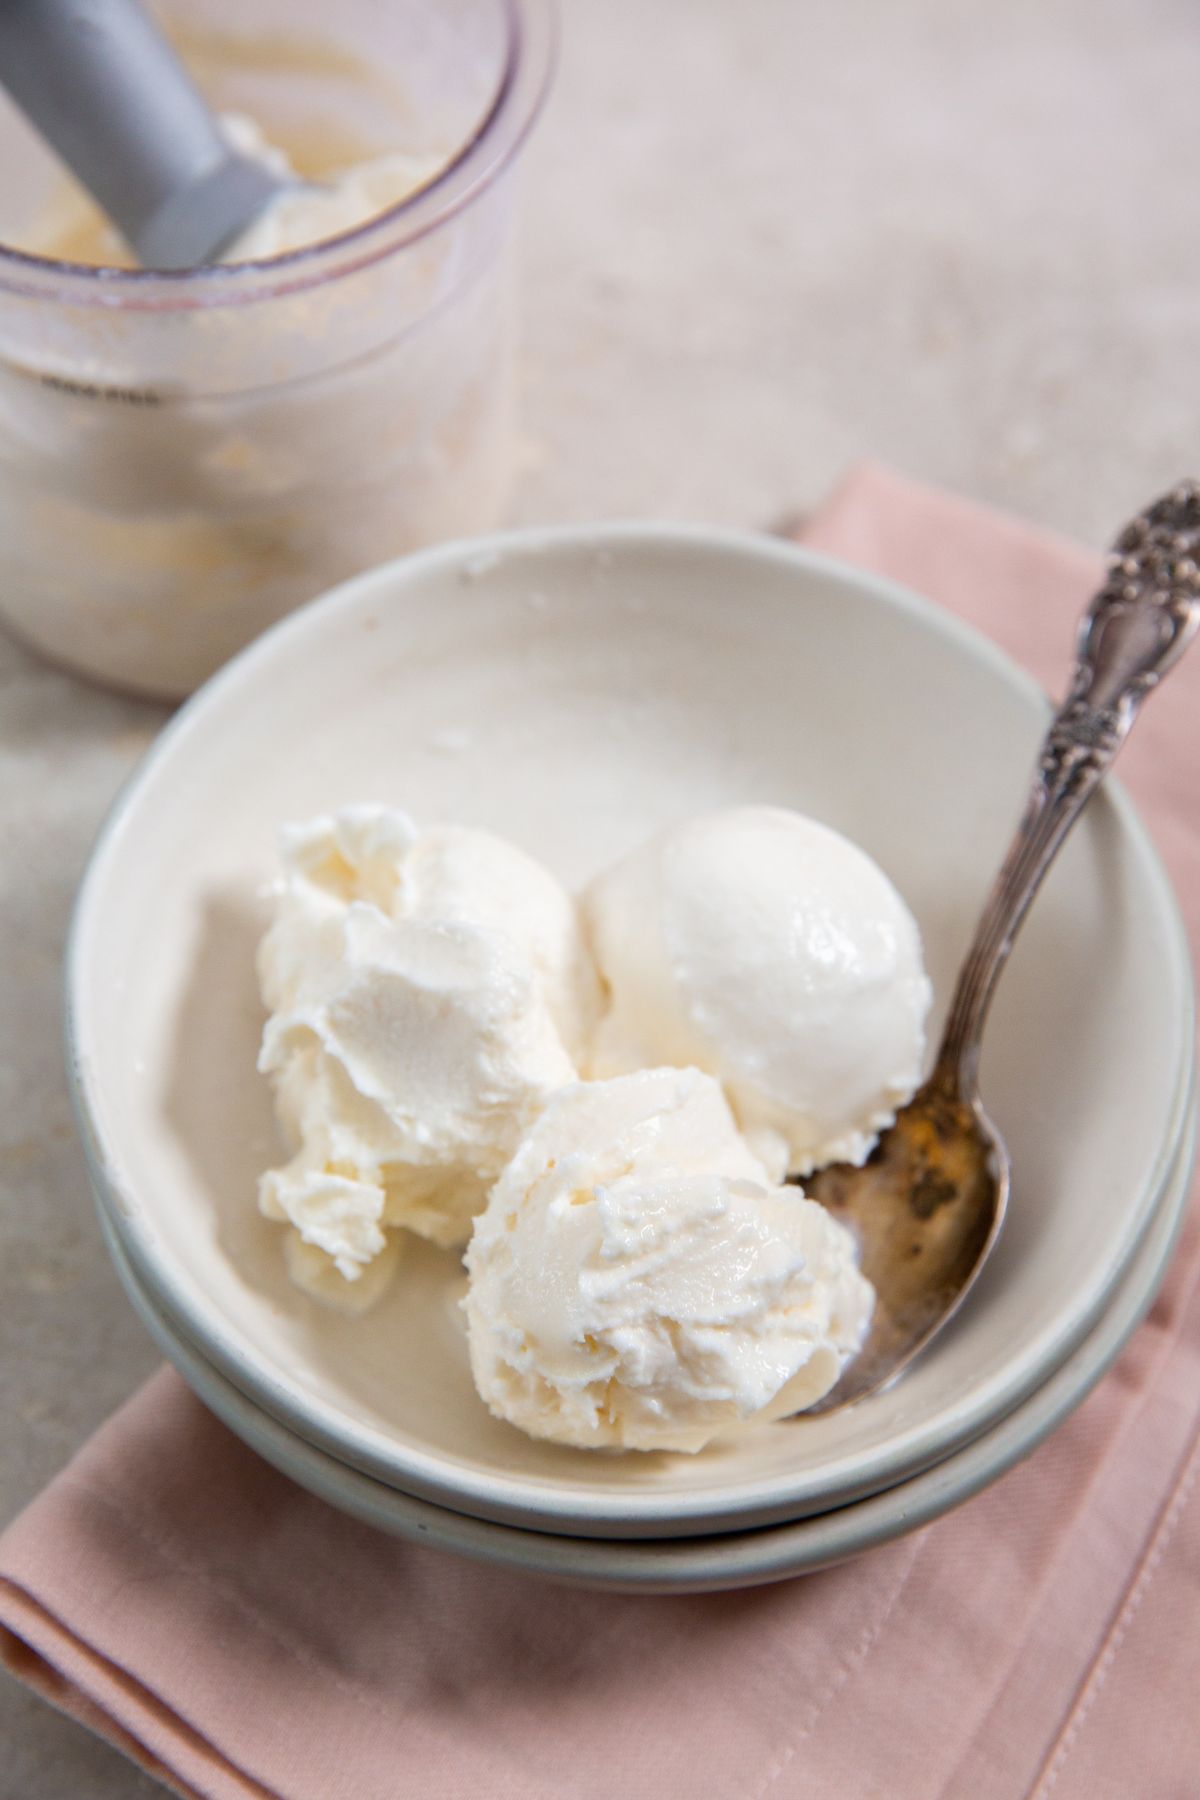 https://laraclevenger.com/wp-content/uploads/2023/01/Ninja-Cream-Vanilla-Ice-Cream-41.jpg